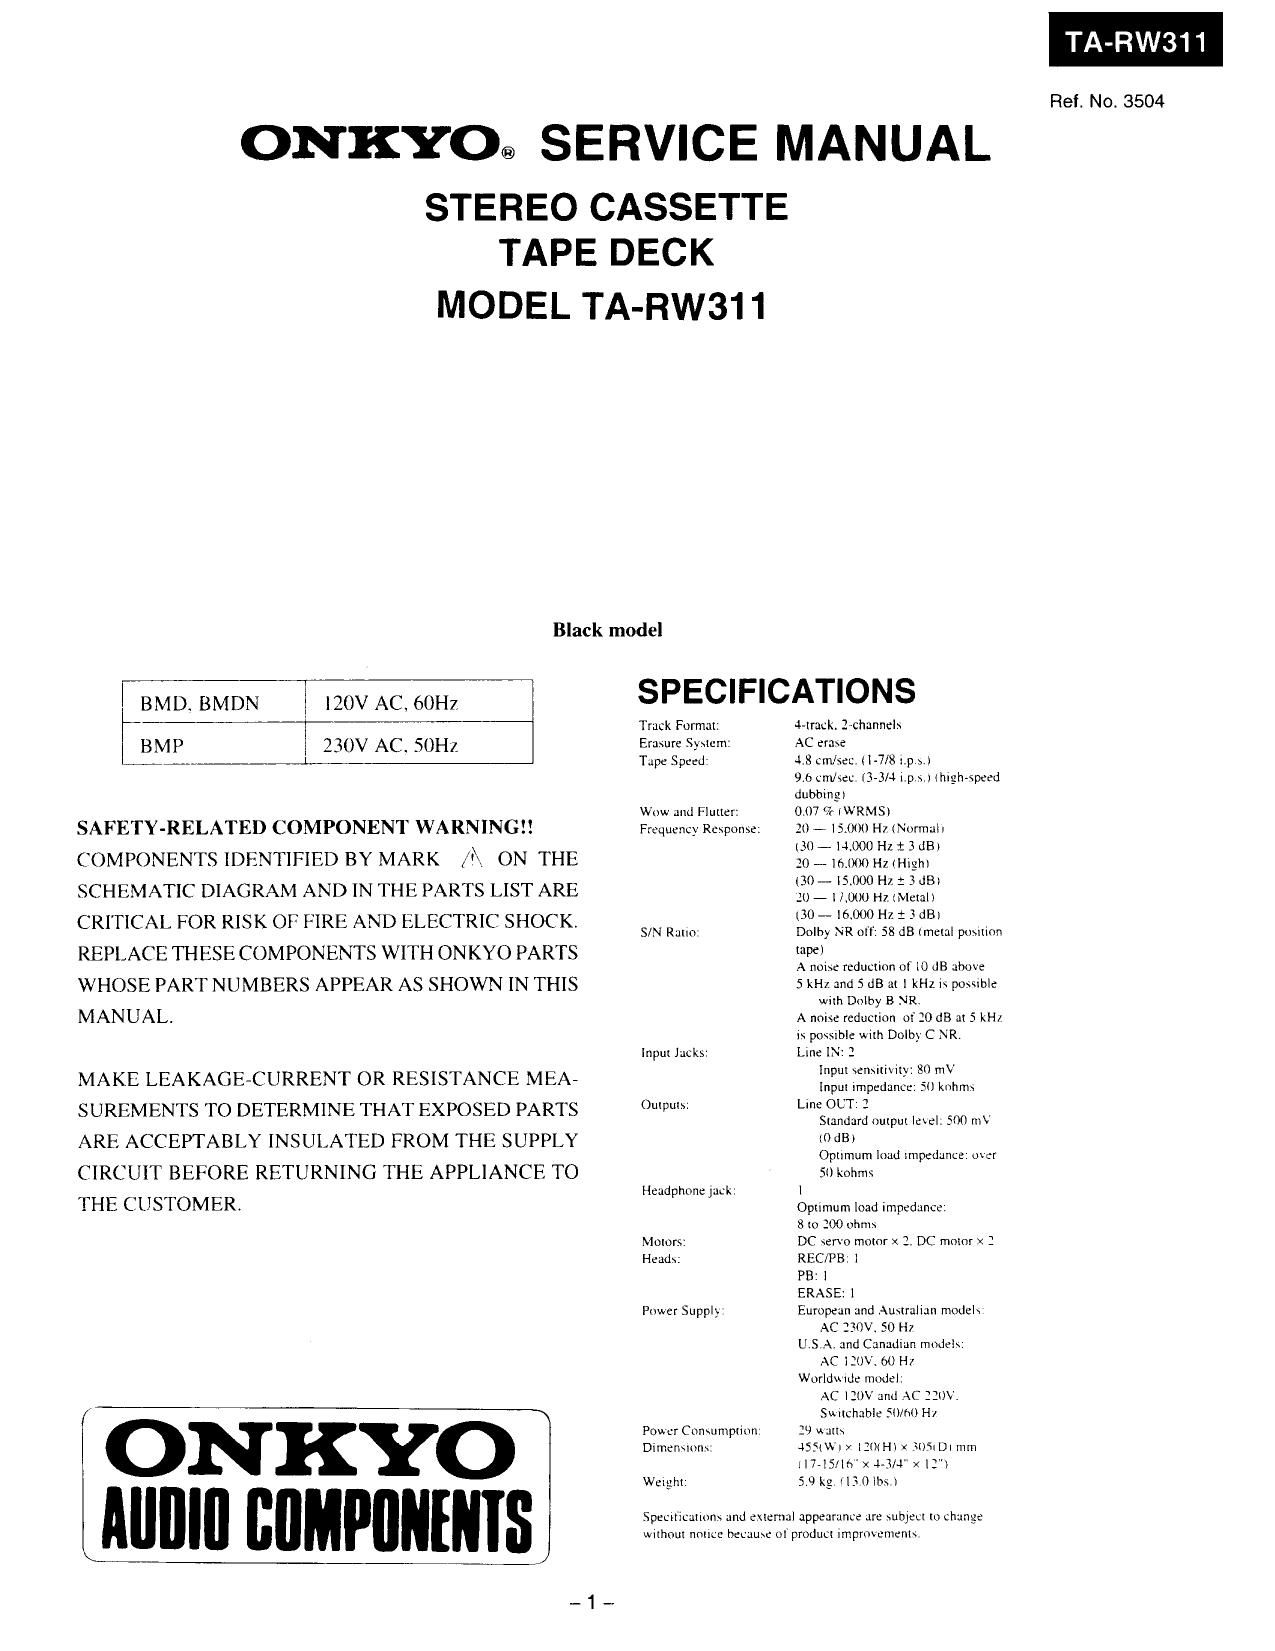 Onkyo TARW 311 Service Manual